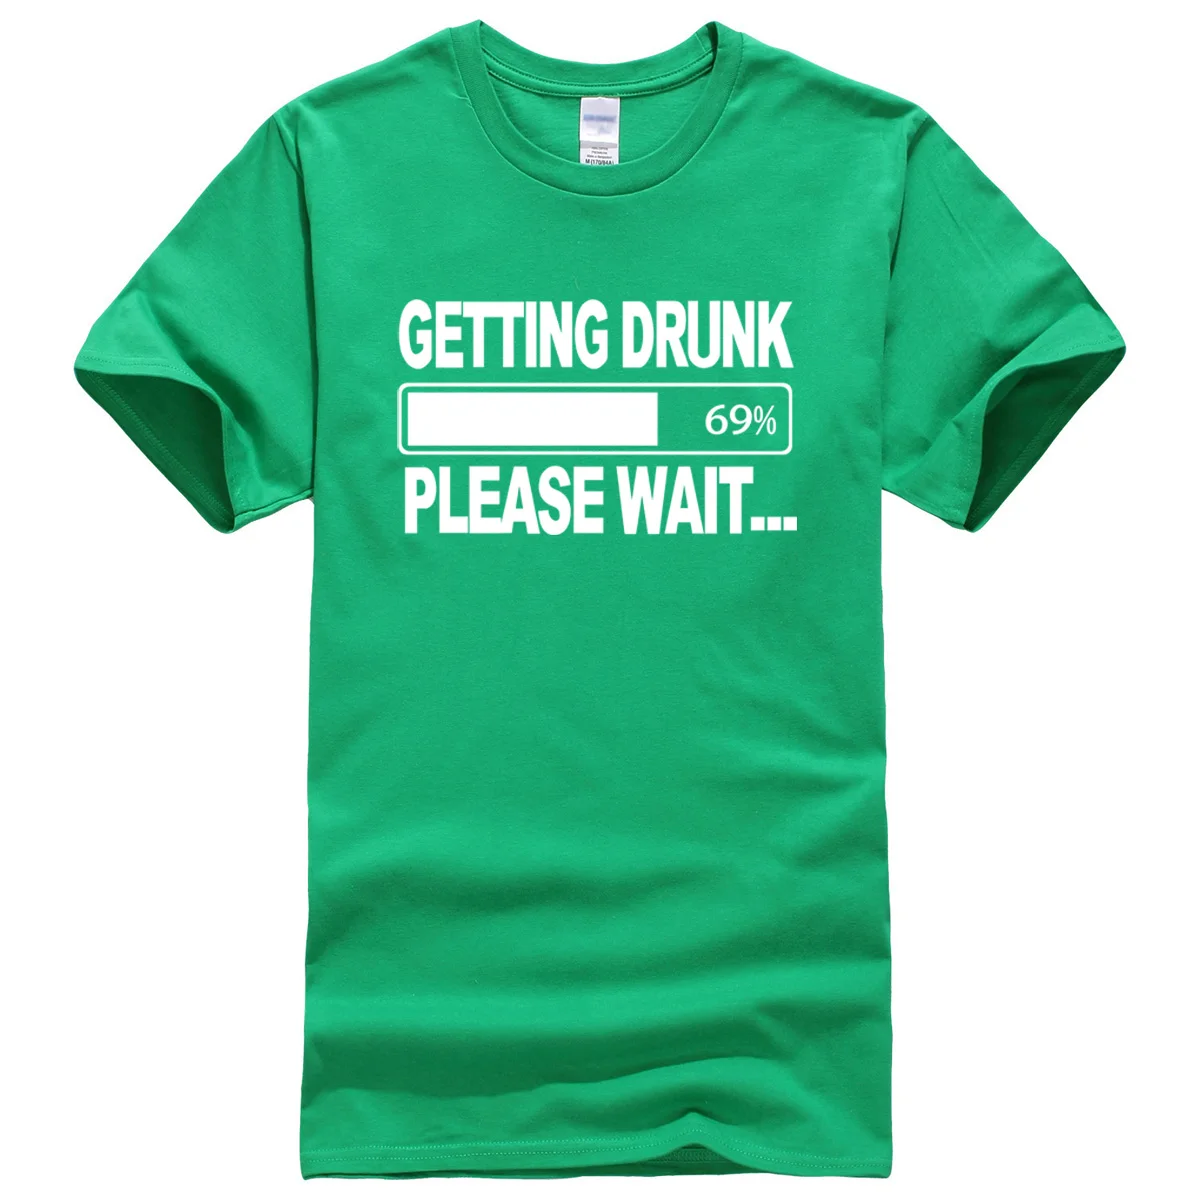 Летние мужские футболки, Забавные футболки с надписью «Getting Drunk», хлопковые футболки, различные цвета, мужские футболки для фитнеса, мужские топы